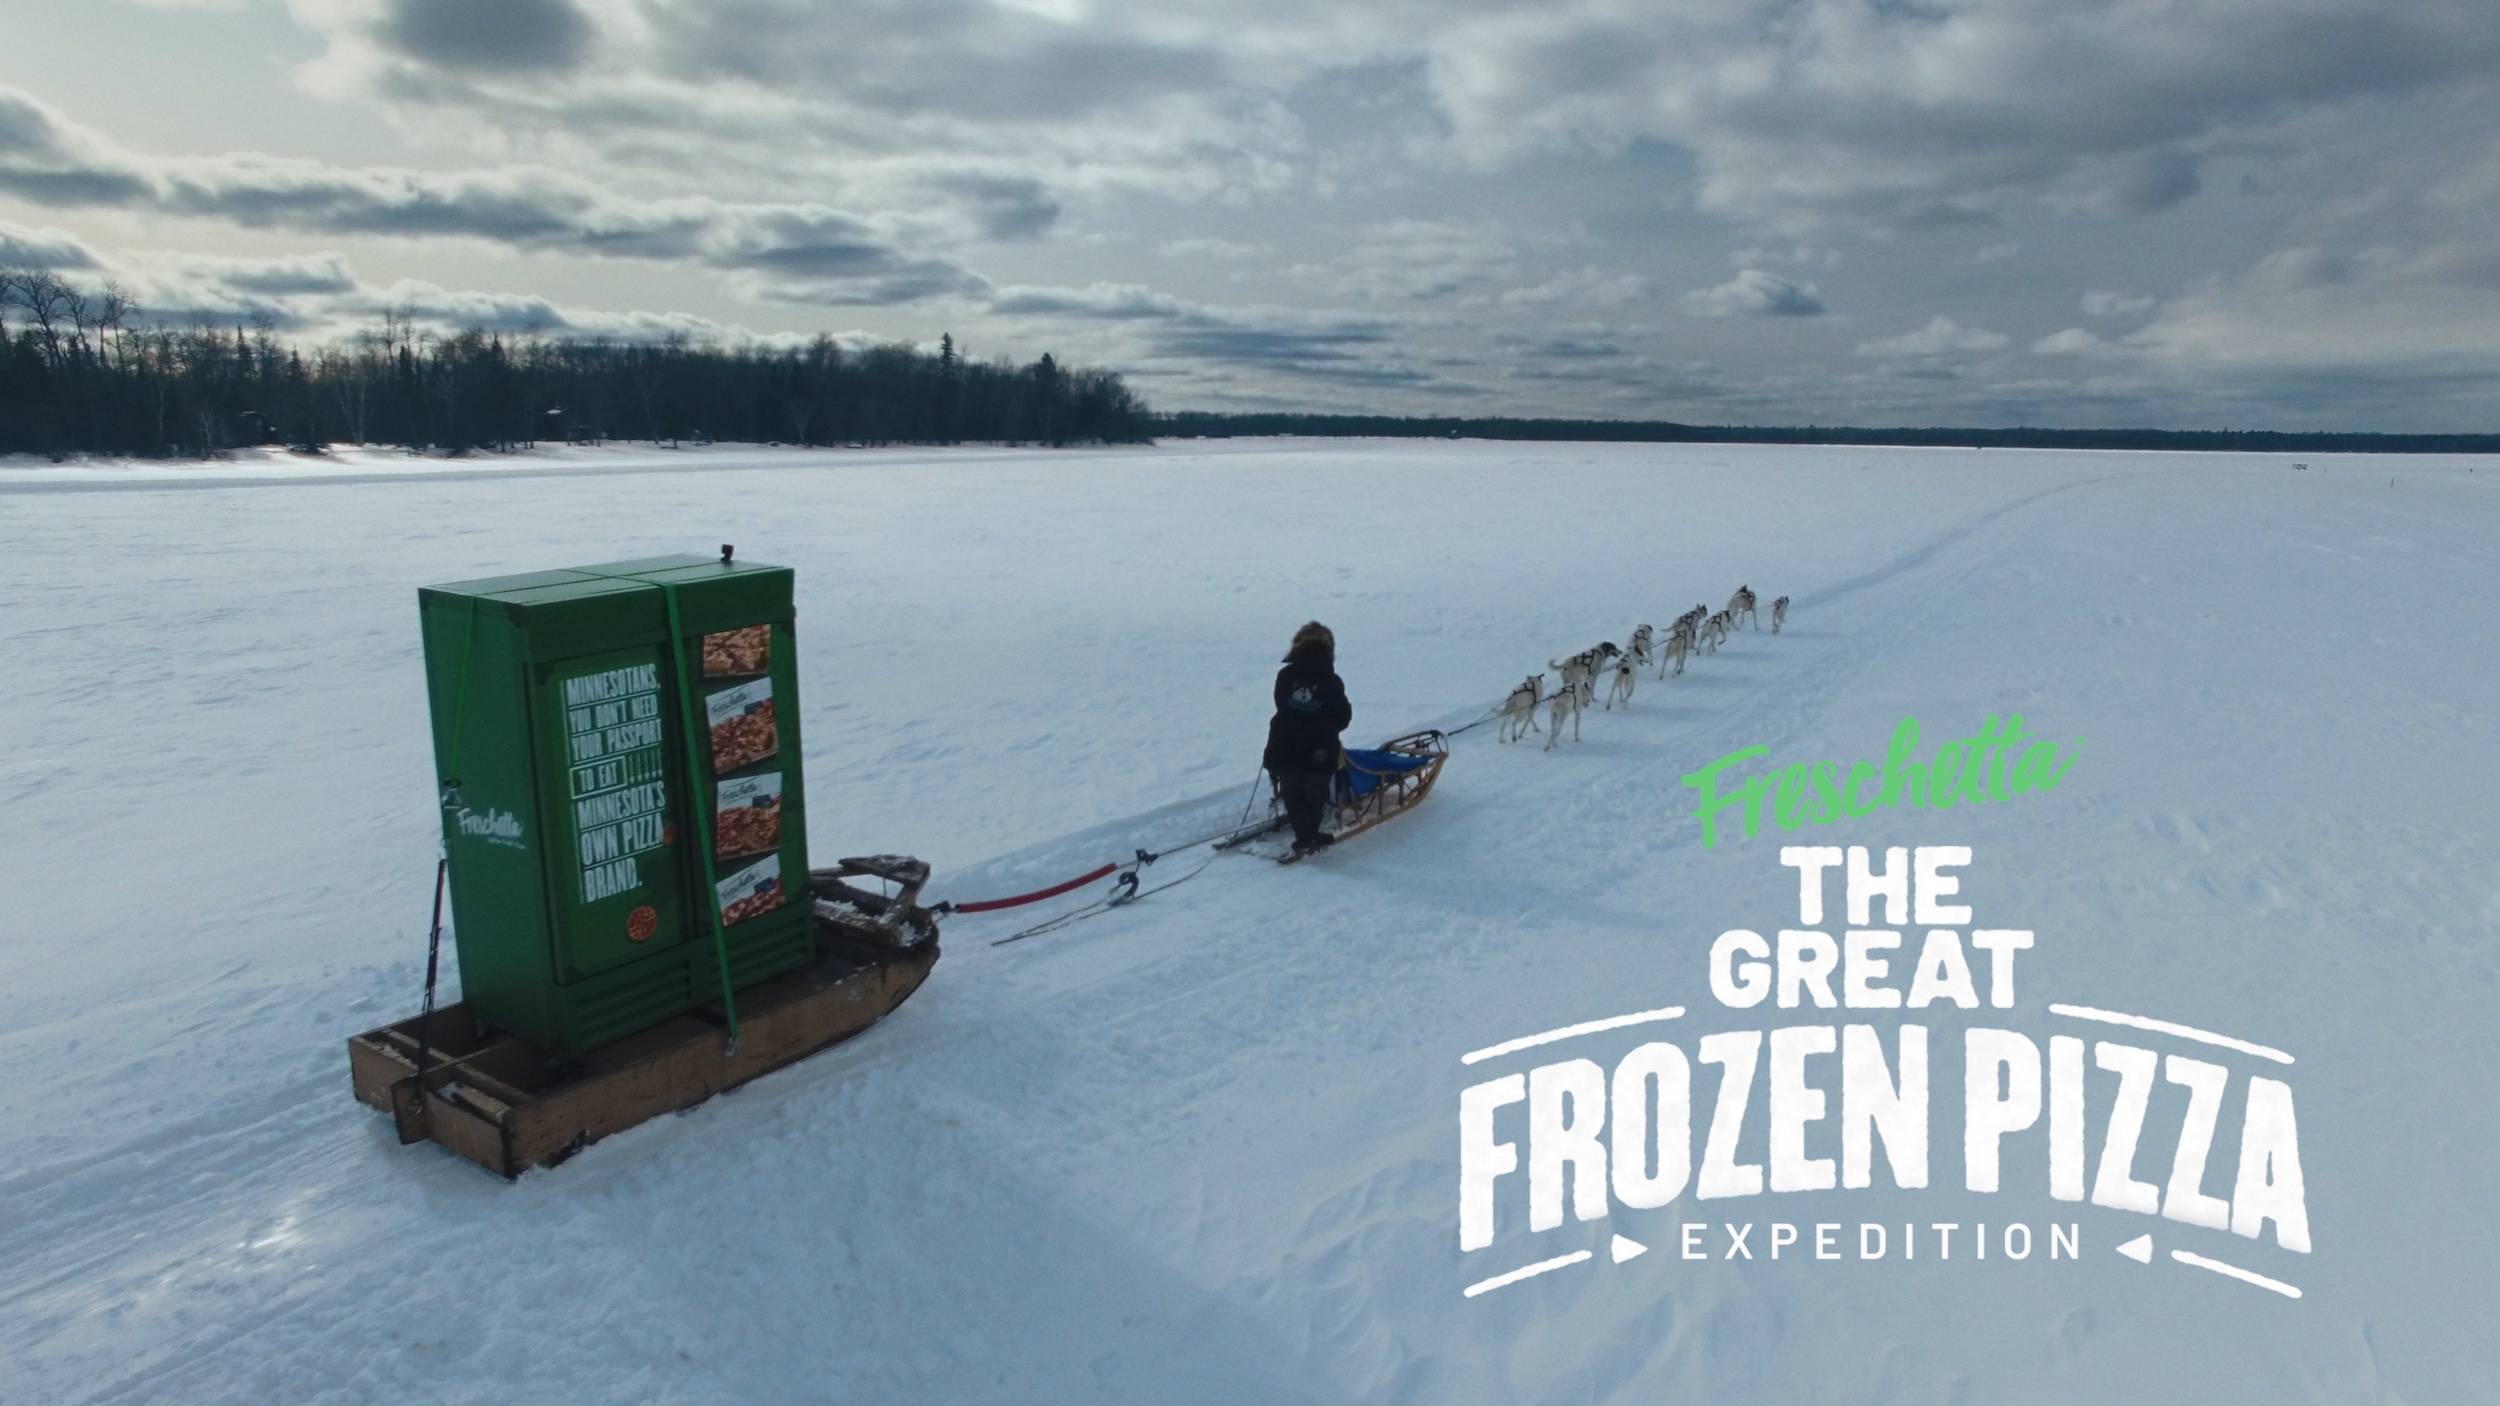 A dog sled pulls a giant freschetta pizza freezer over a frozen lake